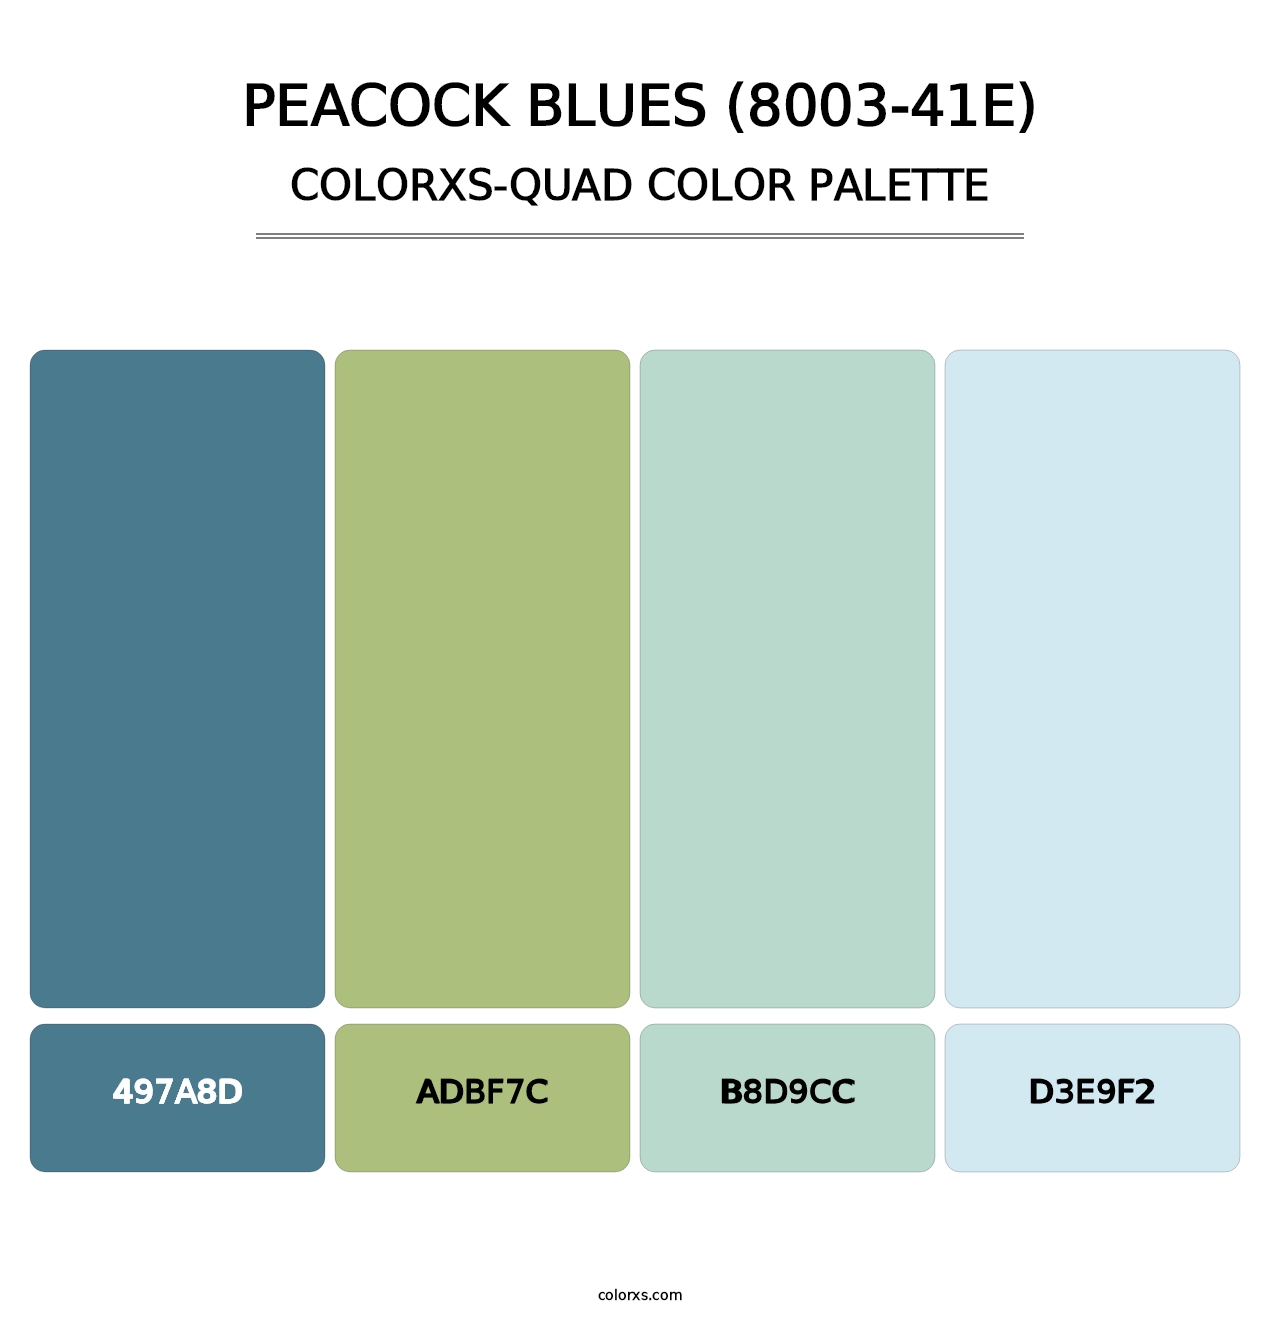 Peacock Blues (8003-41E) - Colorxs Quad Palette